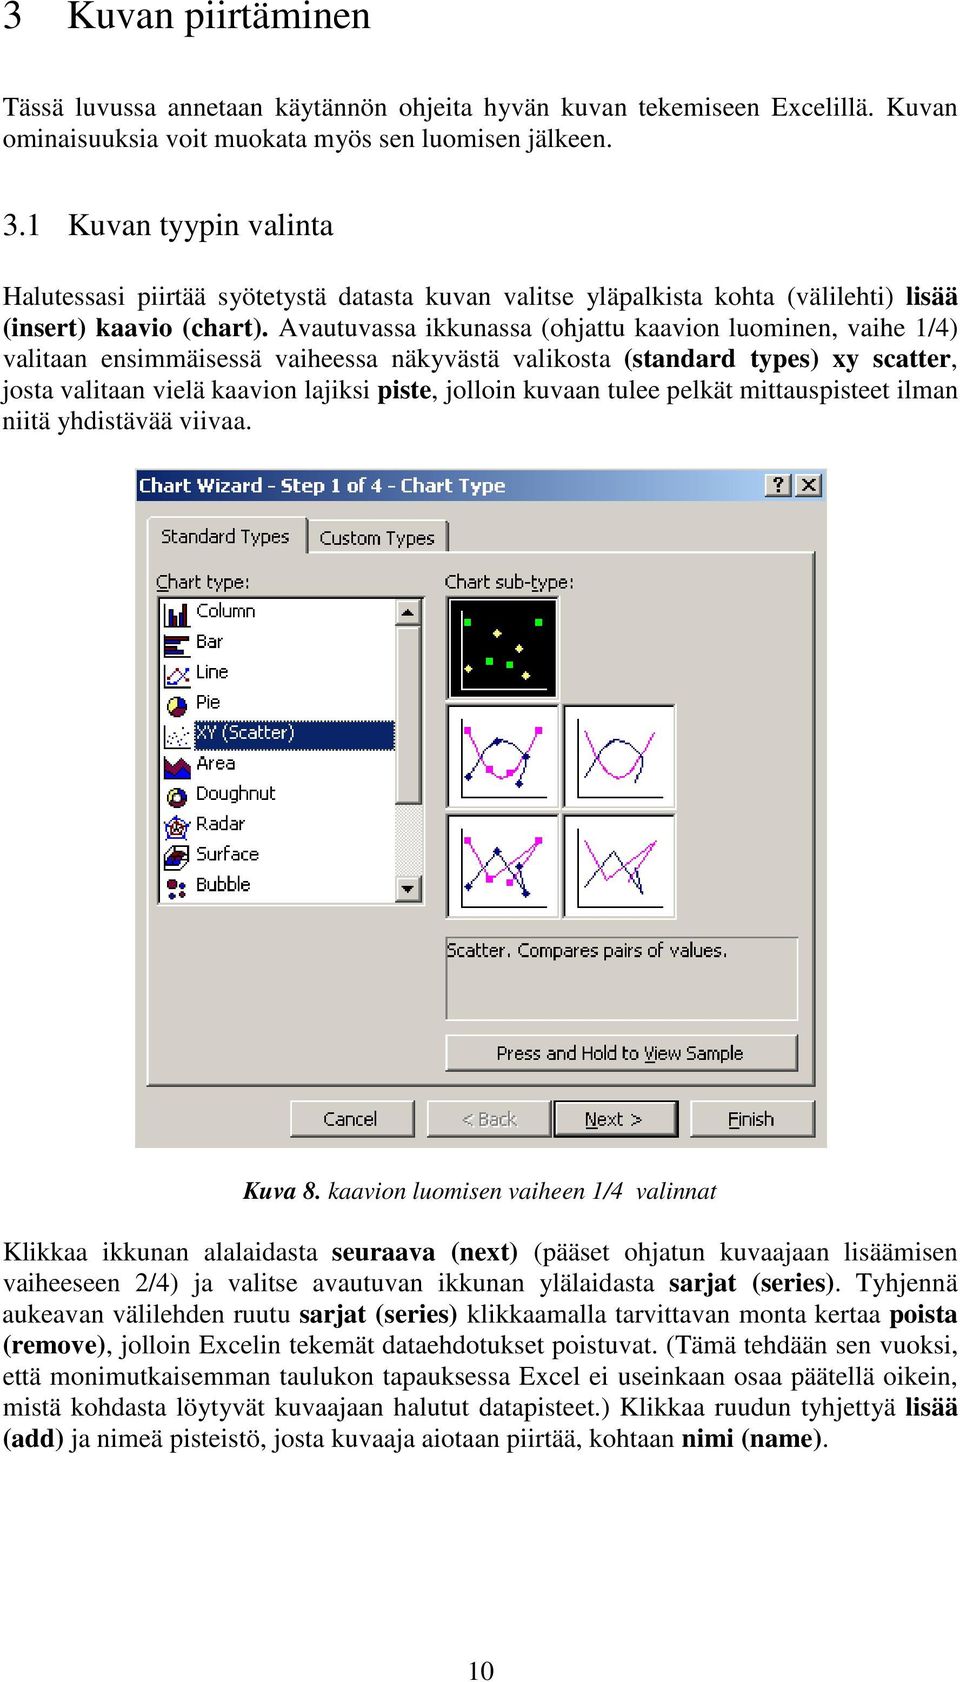 Avautuvassa ikkunassa (ohjattu kaavion luominen, vaihe 1/4) valitaan ensimmäisessä vaiheessa näkyvästä valikosta (standard types) xy scatter, josta valitaan vielä kaavion lajiksi piste, jolloin